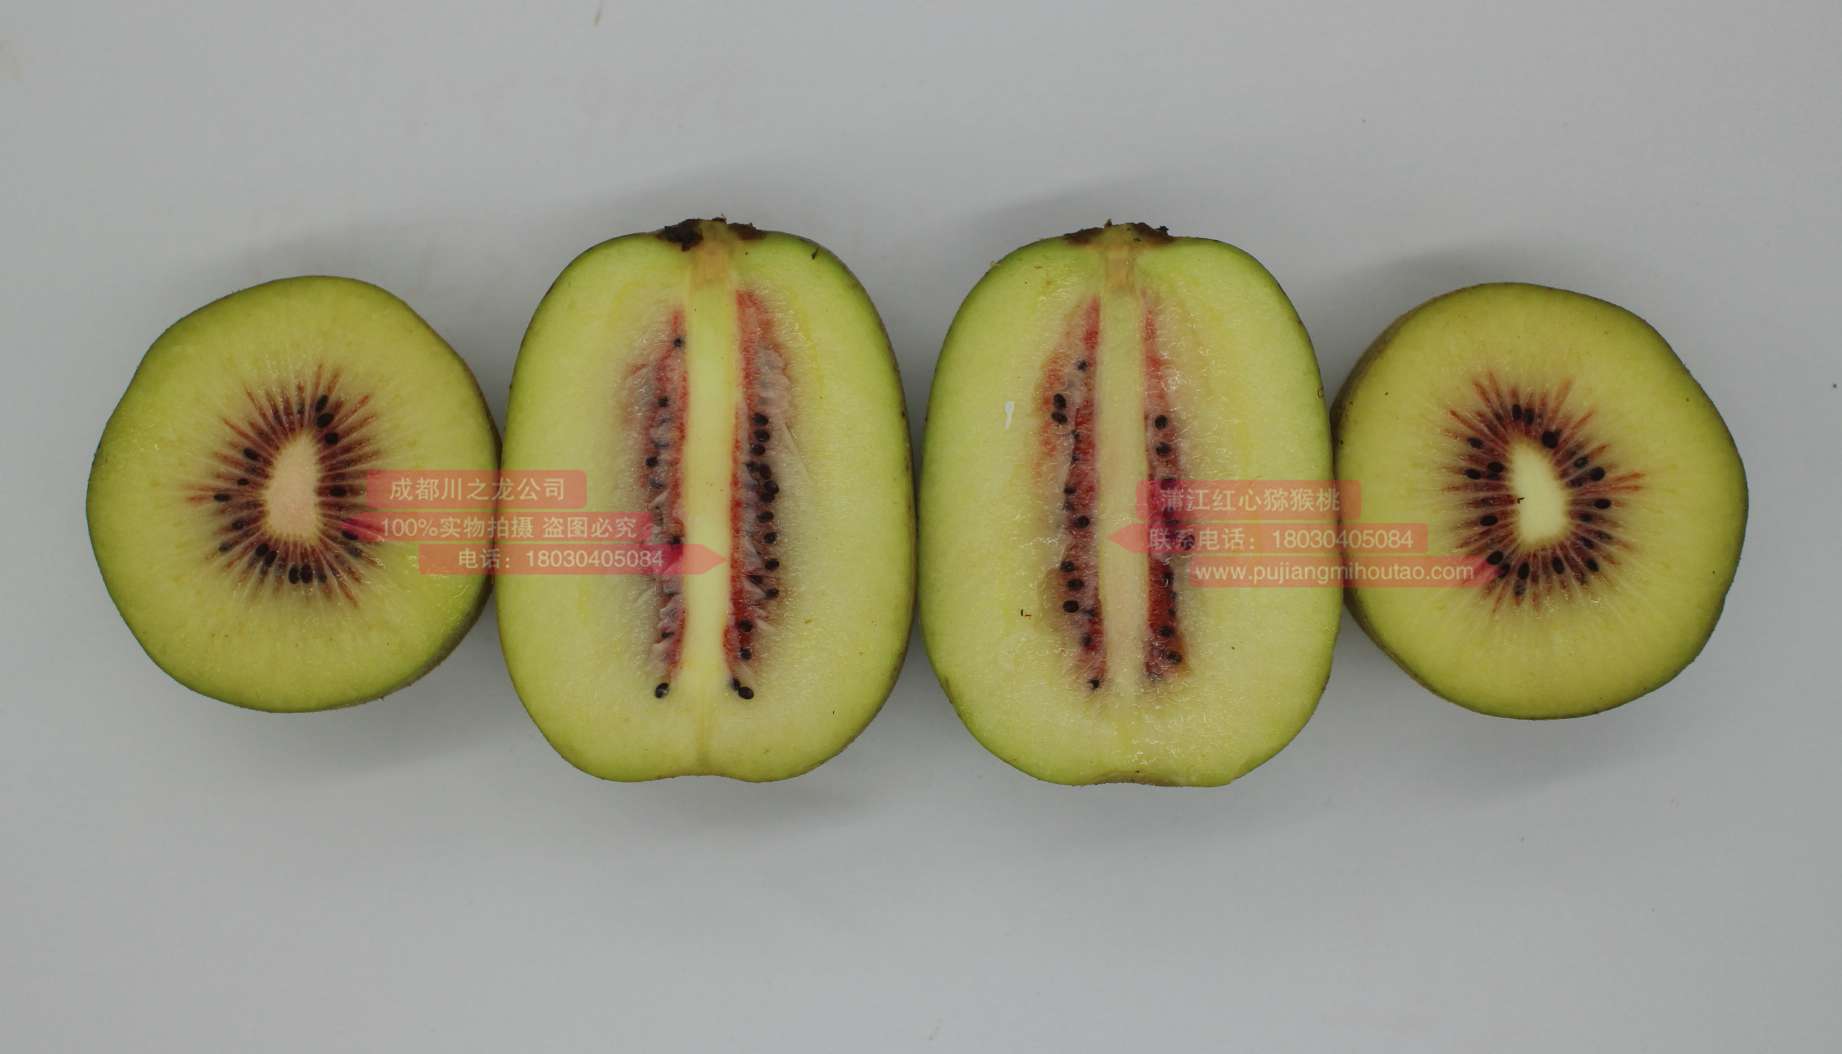 现在很多东红猕猴桃因为授粉不均匀或不完全